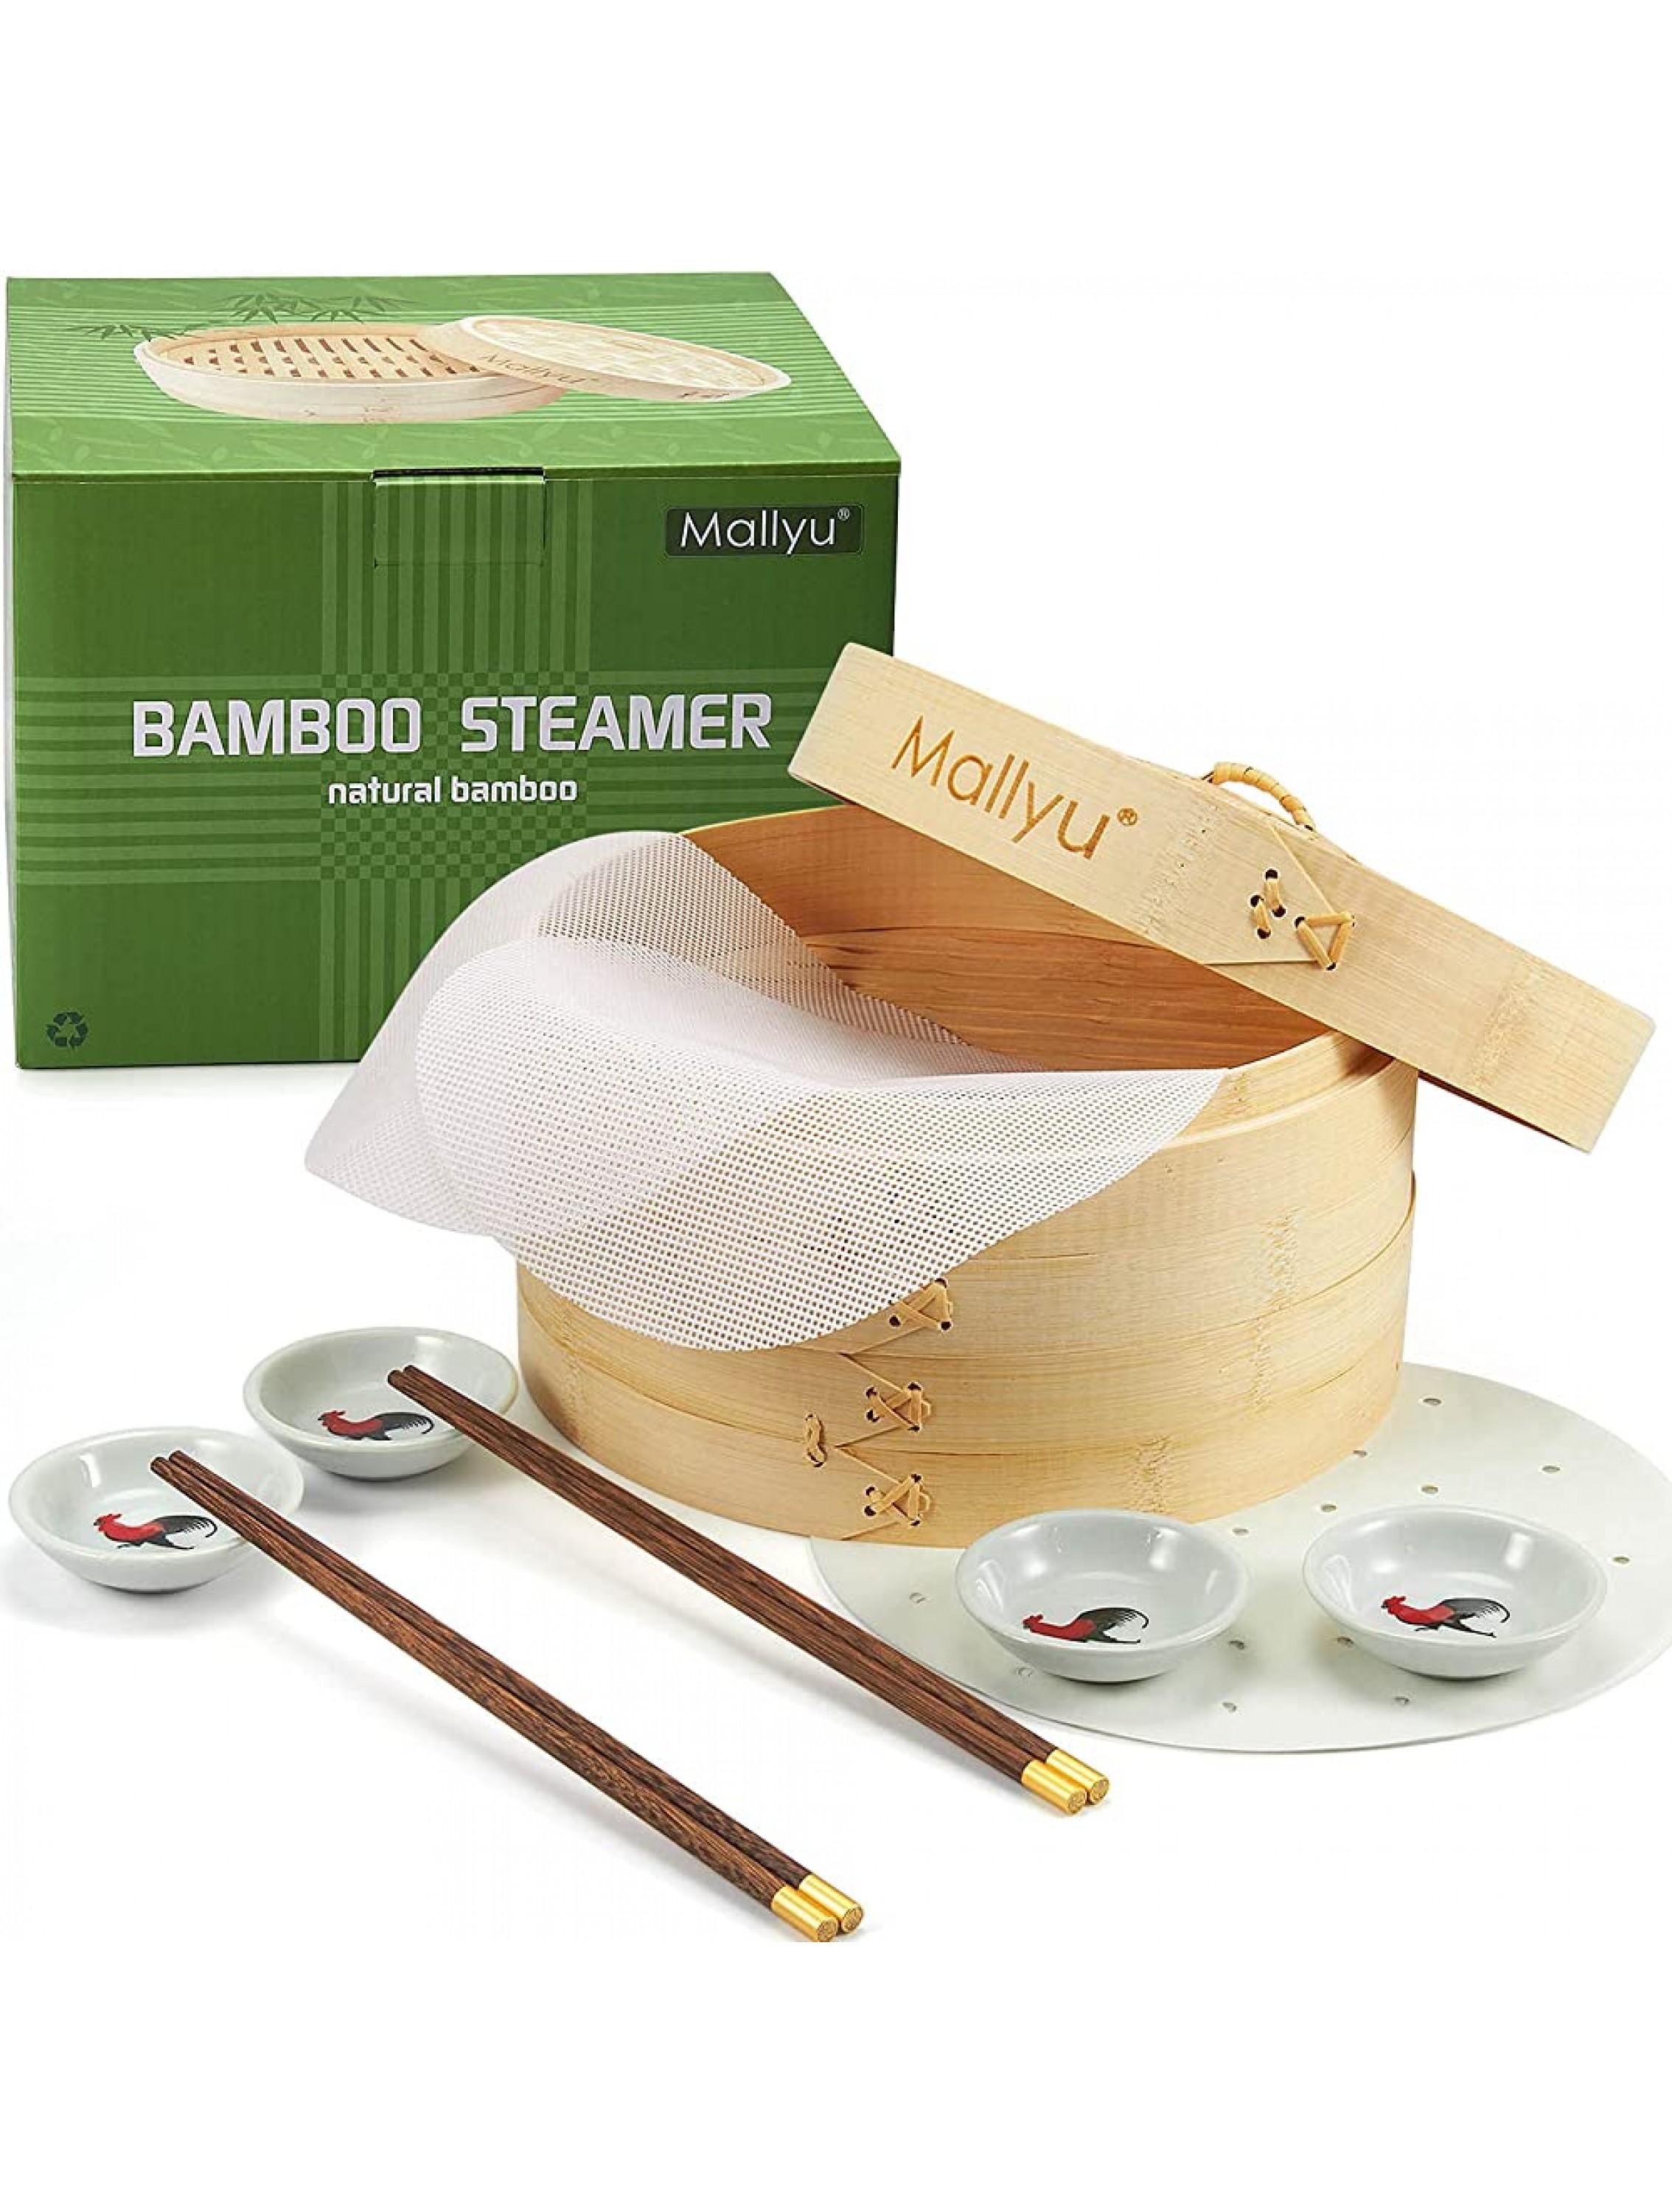 MALLYU Bamboo Steamer Basket Dumpling Steamer Vegetable Steamer 10 inch 2 Tier for Cooking Steaming Bao Buns with Liners Reusable Mesh Mat Sauce Dish Chopsticks - BB08TIL55